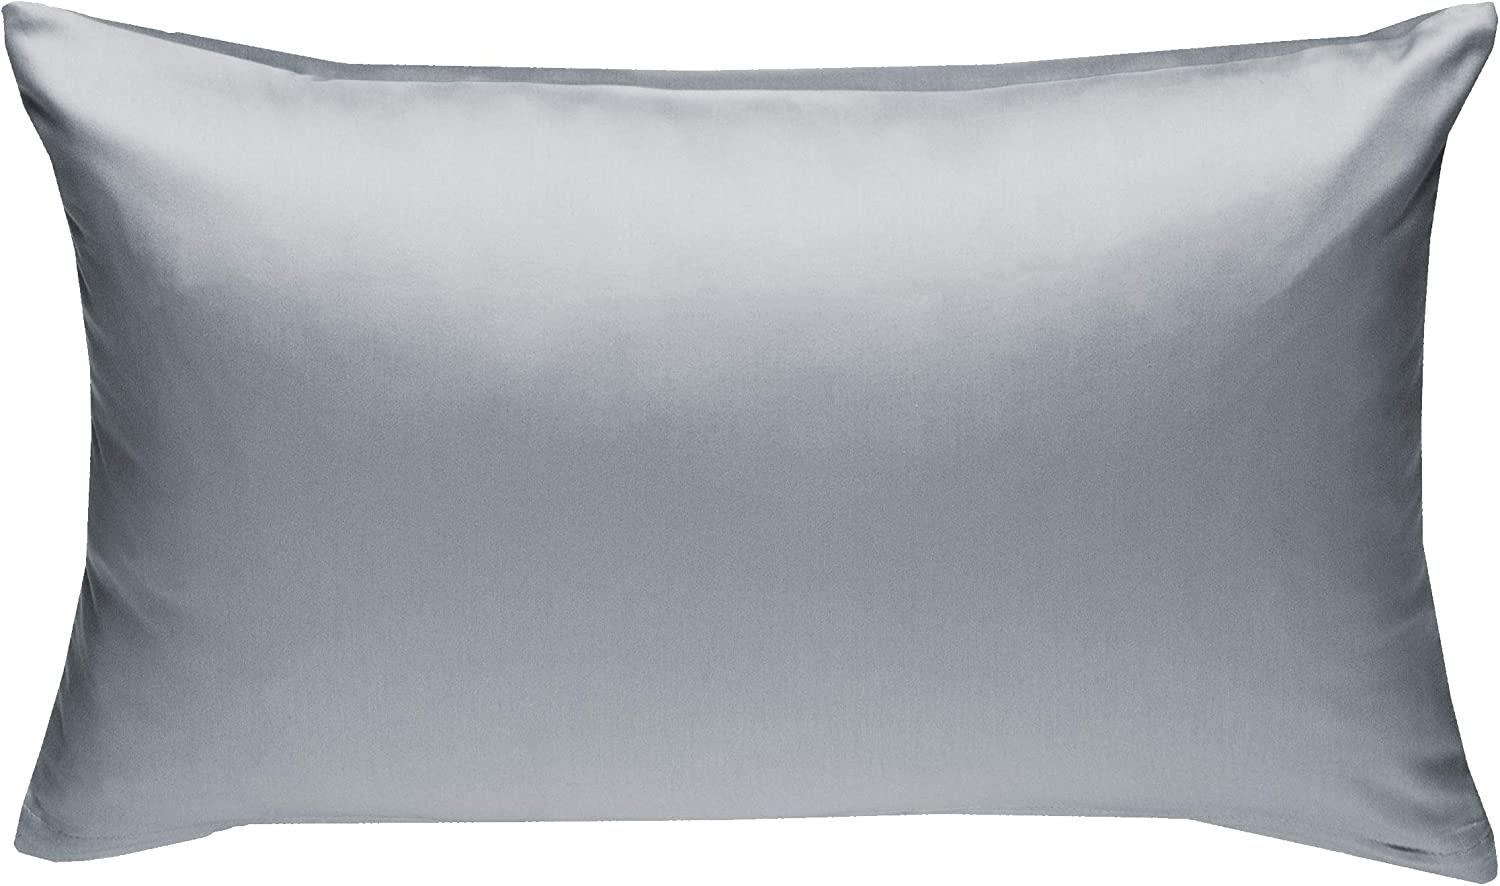 Bettwaesche-mit-Stil Mako-Satin / Baumwollsatin Bettwäsche uni / einfarbig grau Kissenbezug 60x80 cm Bild 1